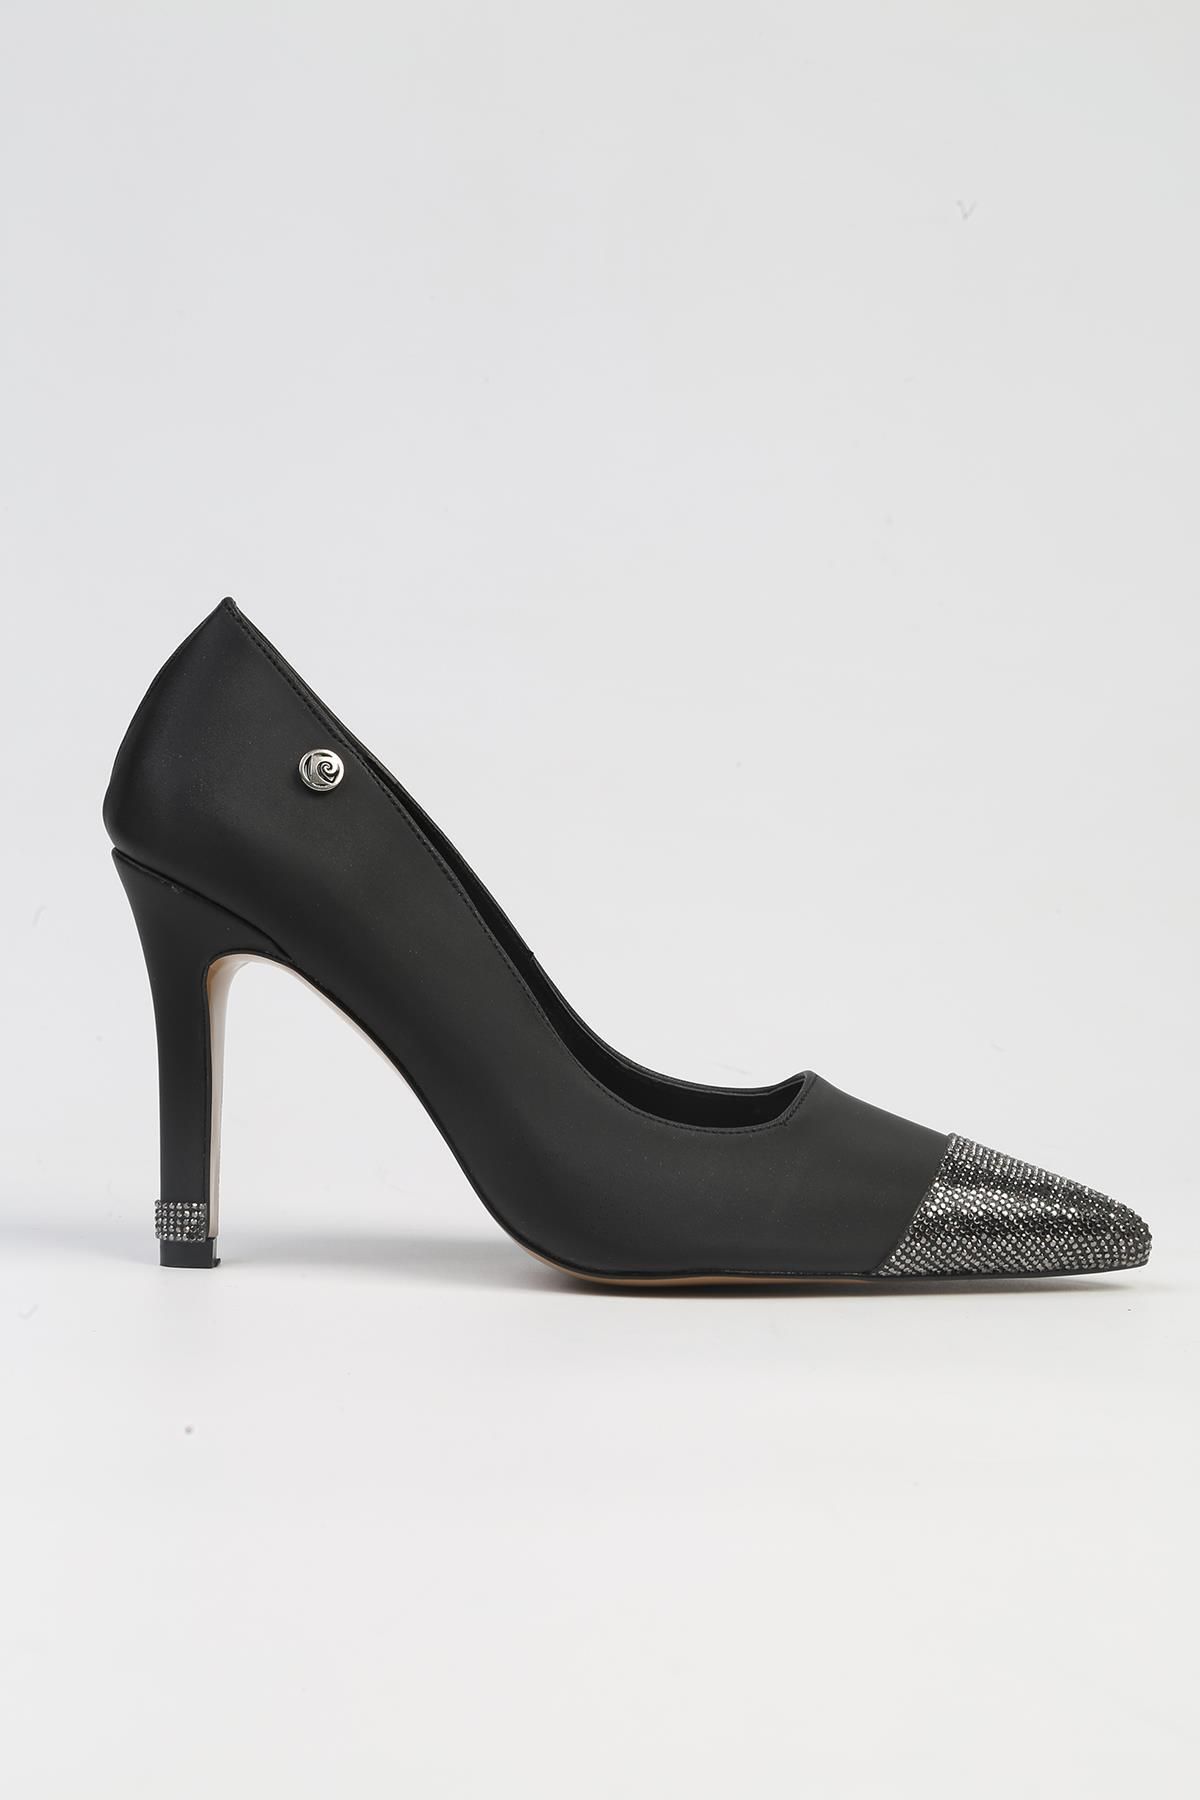 Pierre Cardin ® | PC-52616 - 3691 Siyah-Kadın Topuklu Ayakkabı